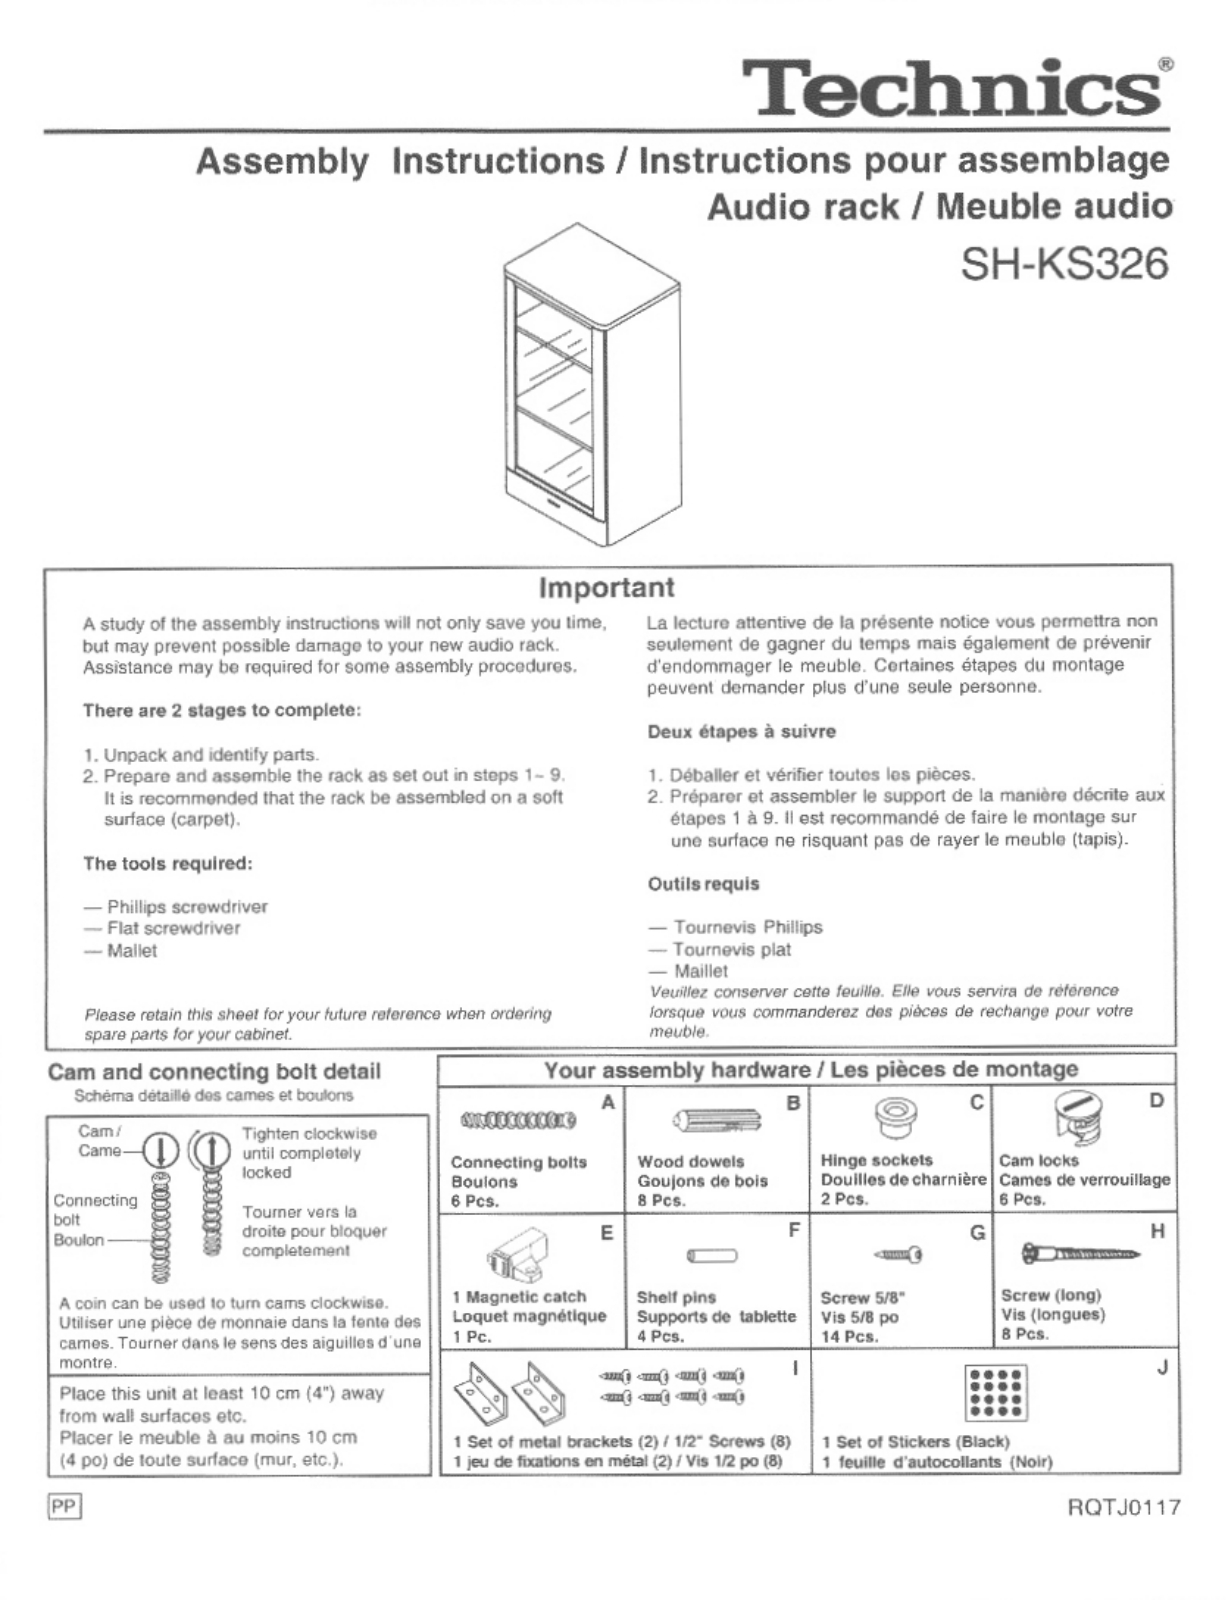 Panasonic SH-KS326 User Manual